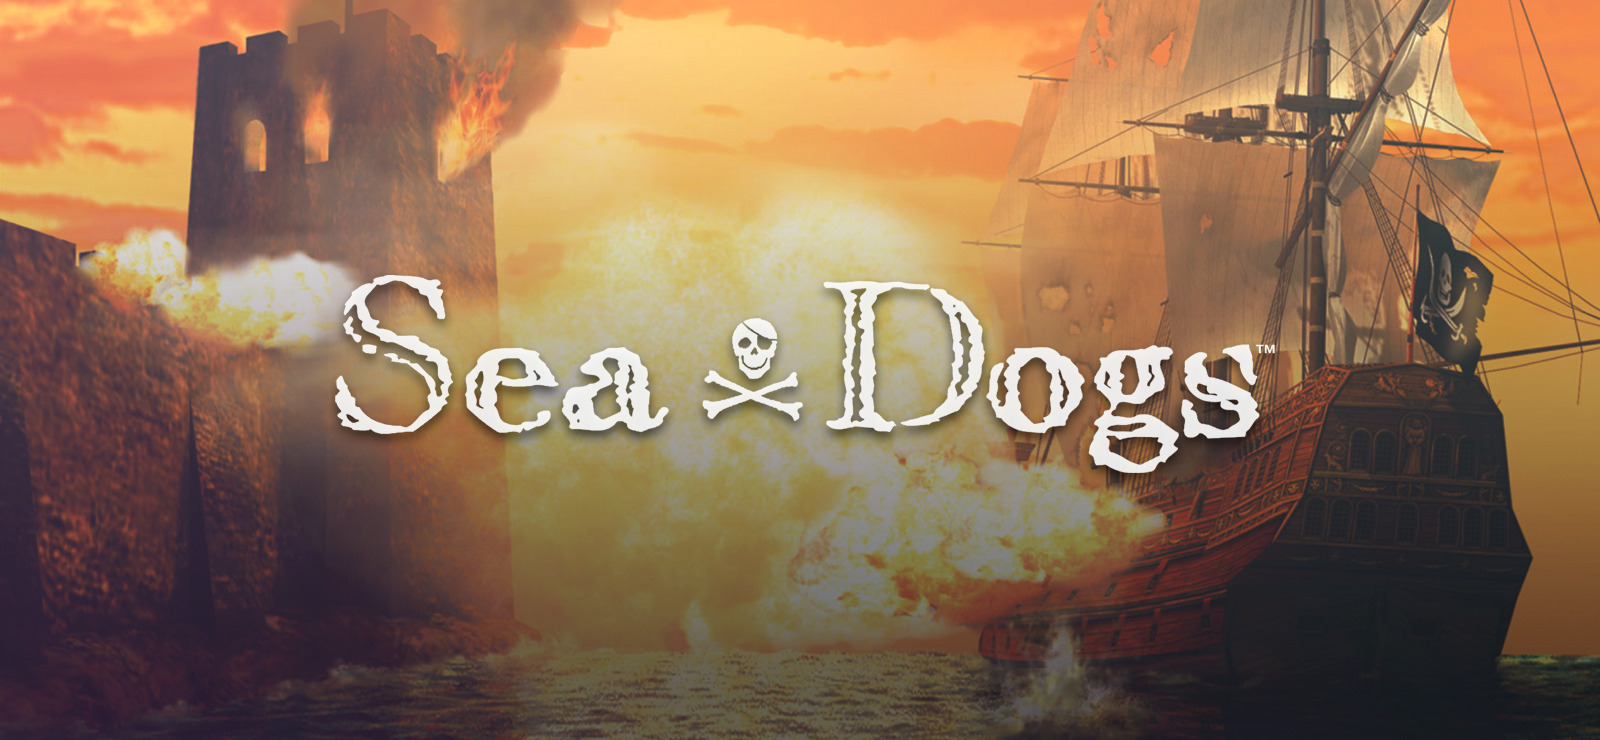 Sea dogs steam